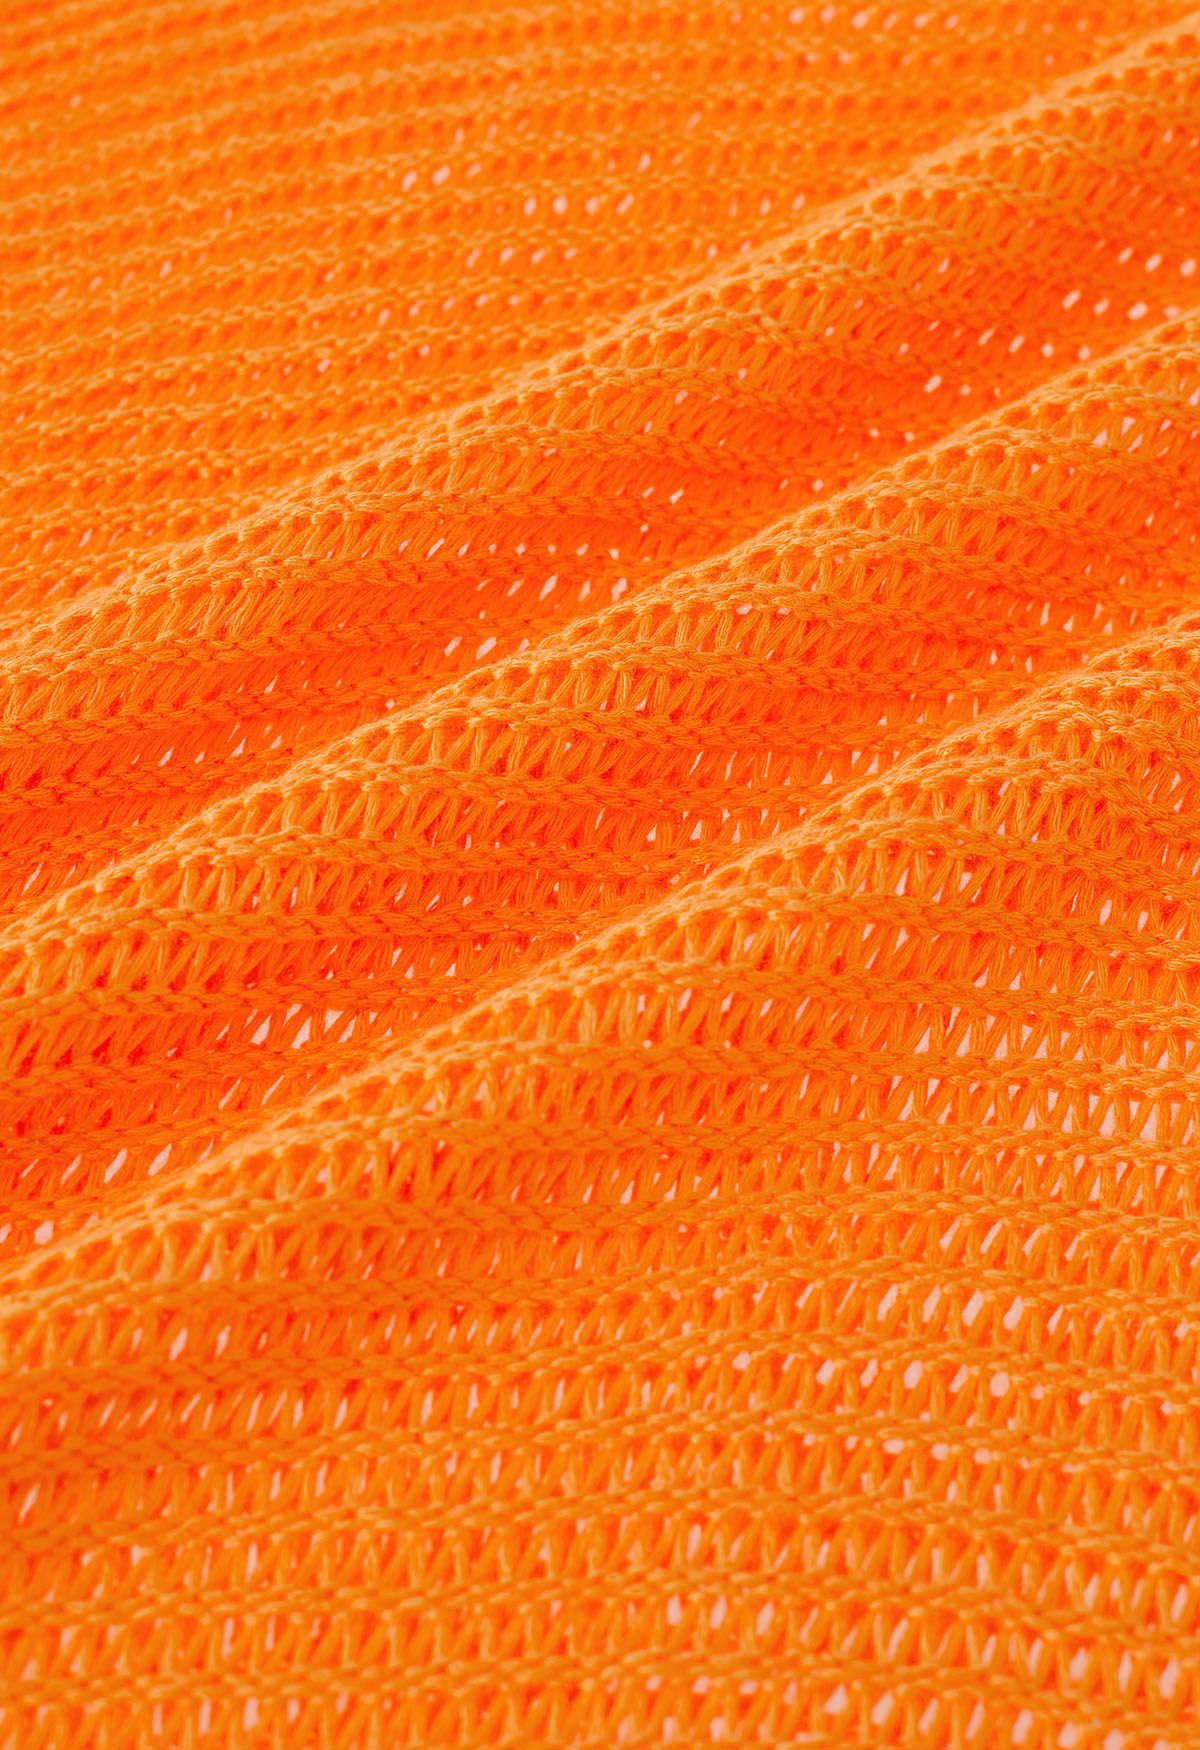 Couverture en tricot pointelle à ourlet frangé en orange